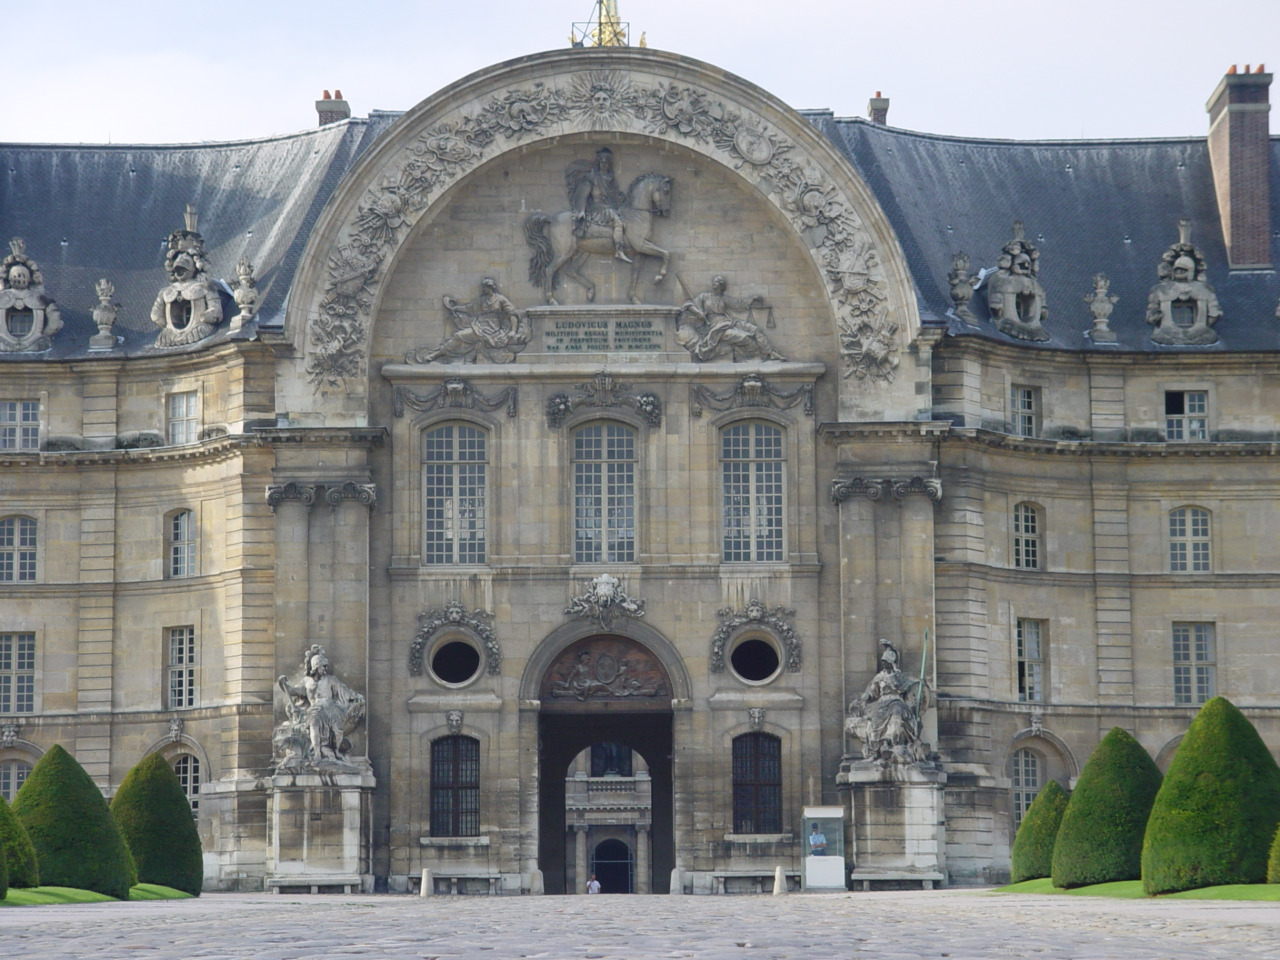 Дом инвалидов: место упокоения Наполеона Бонапарта | Цена 150€, отзывы, описание экскурсии